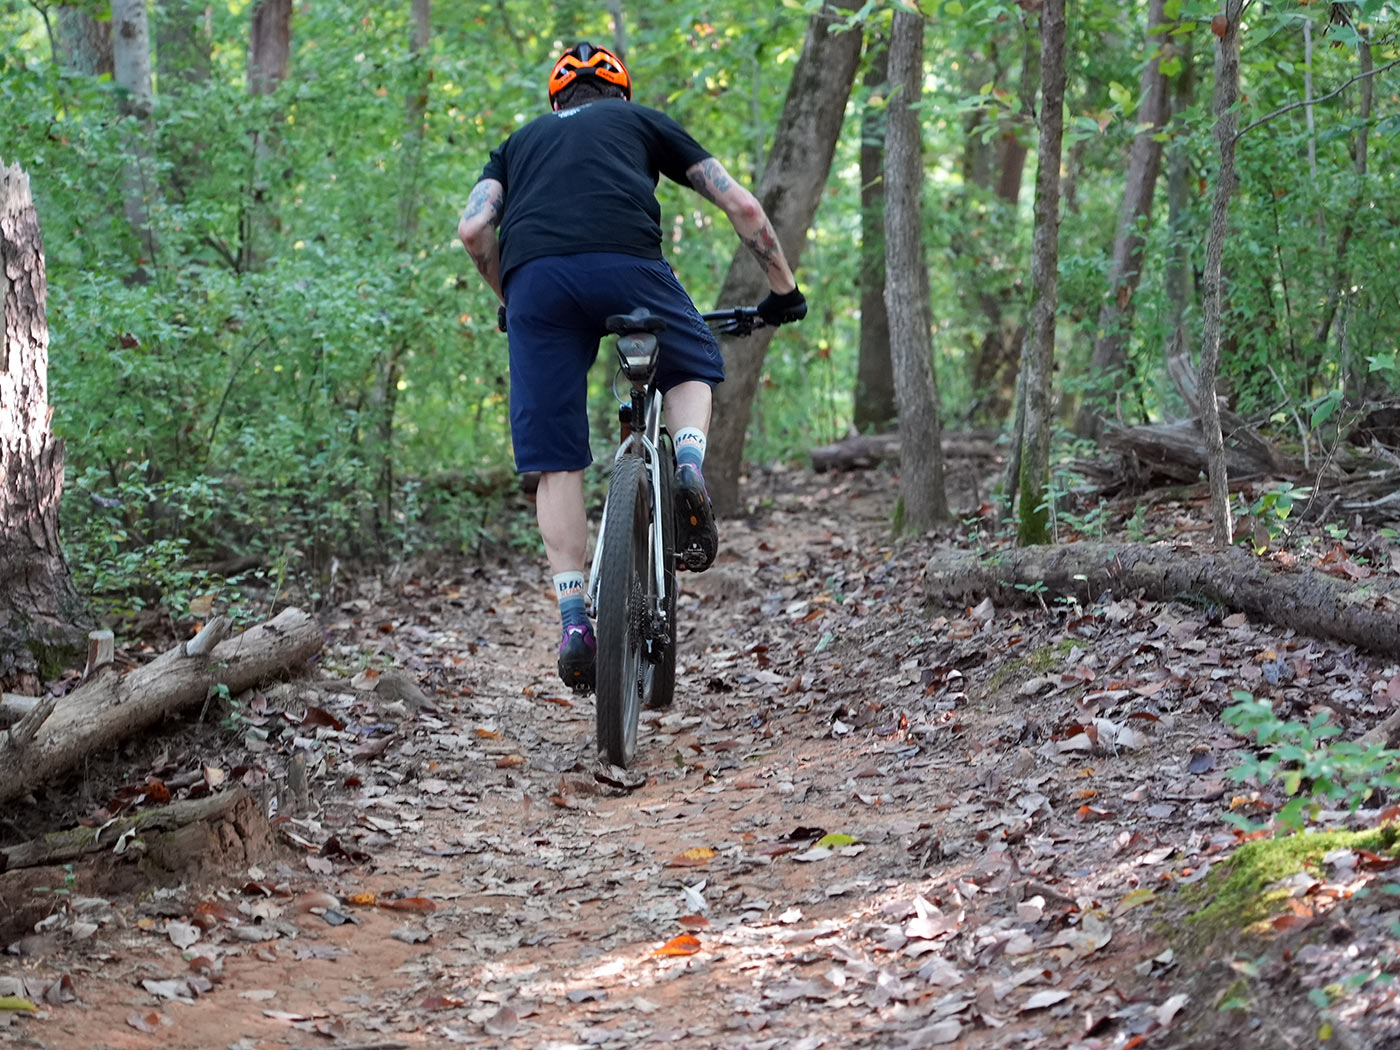 riding action photo for litespeed pinhoti 3 ti hardtail mountain bike review